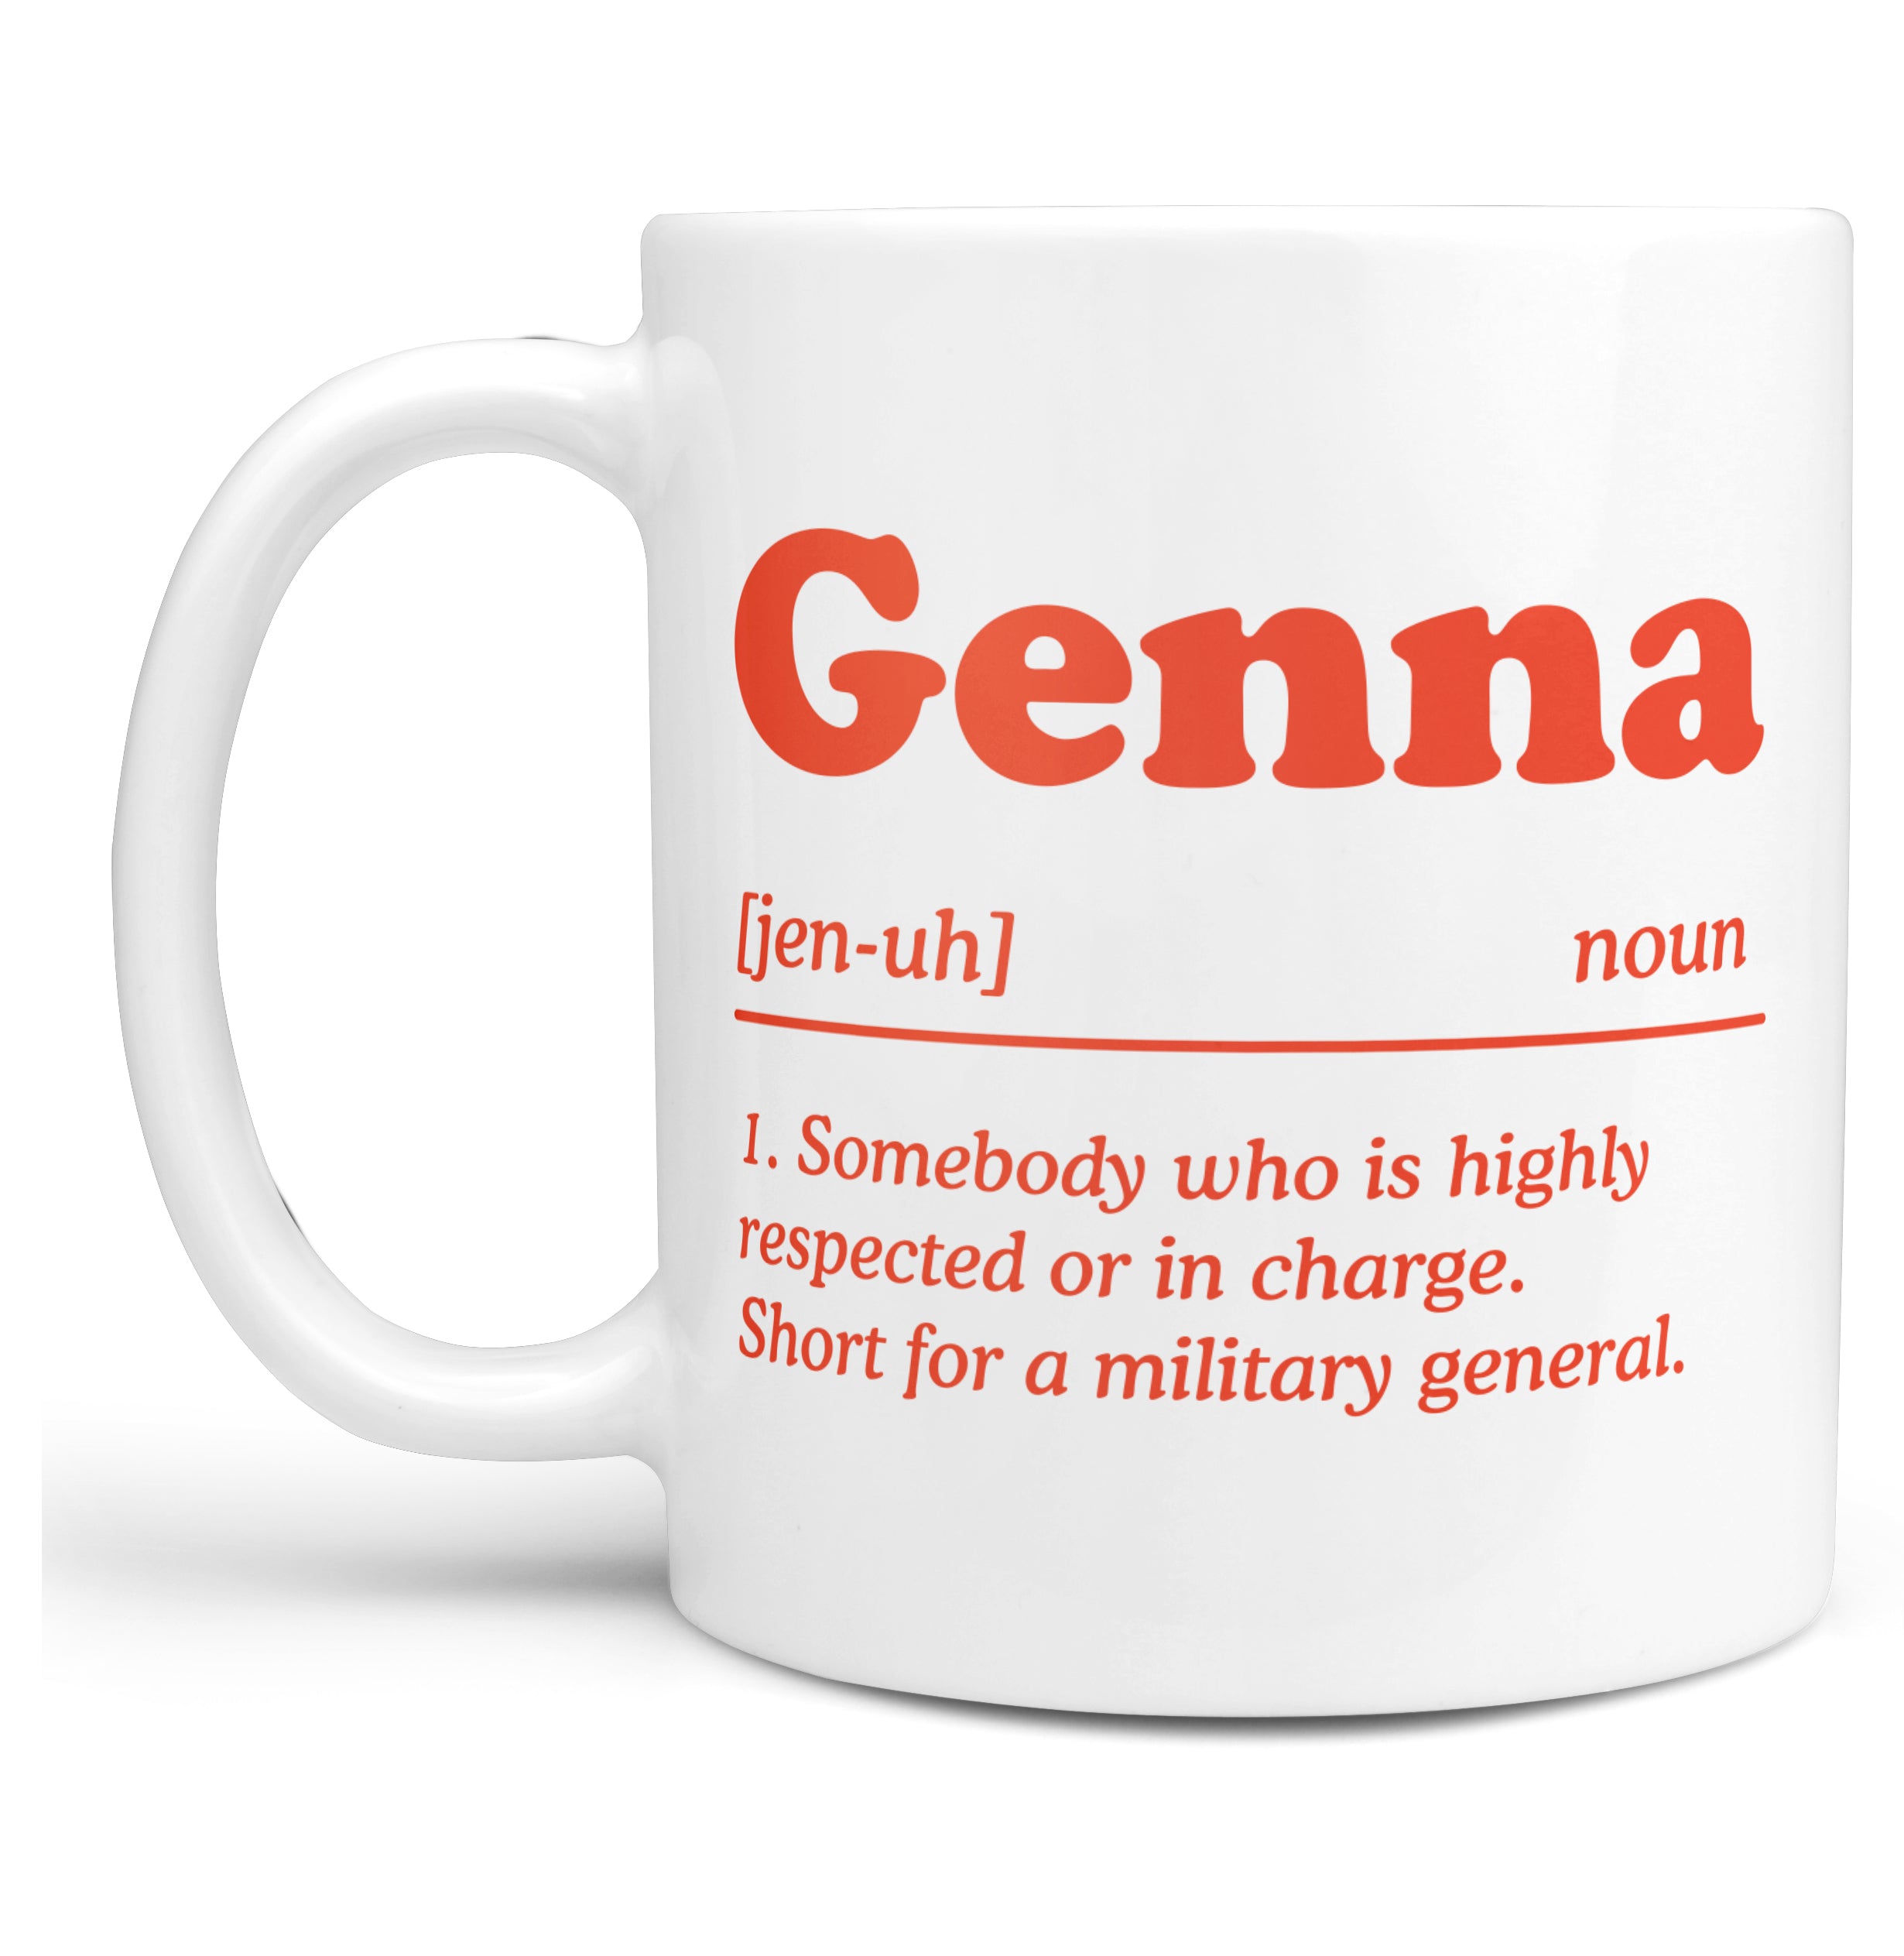 Define: Genna